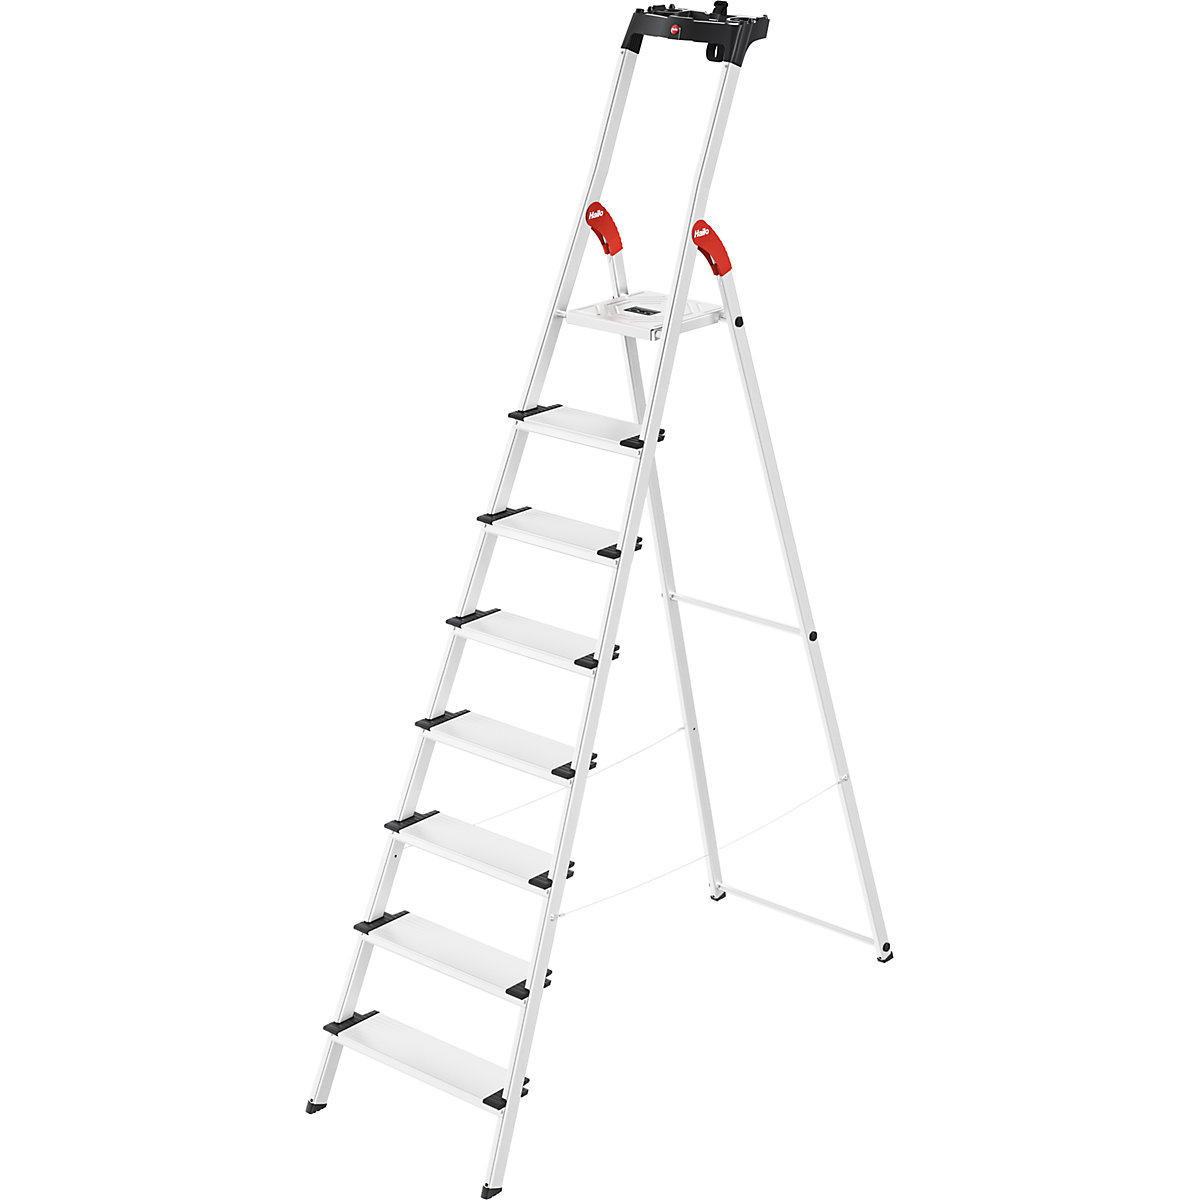 Aluminijasta dvokraka lestev s stopnicami ComfortLine L80 – Hailo, nosilnost 150 kg, 8 stopnic